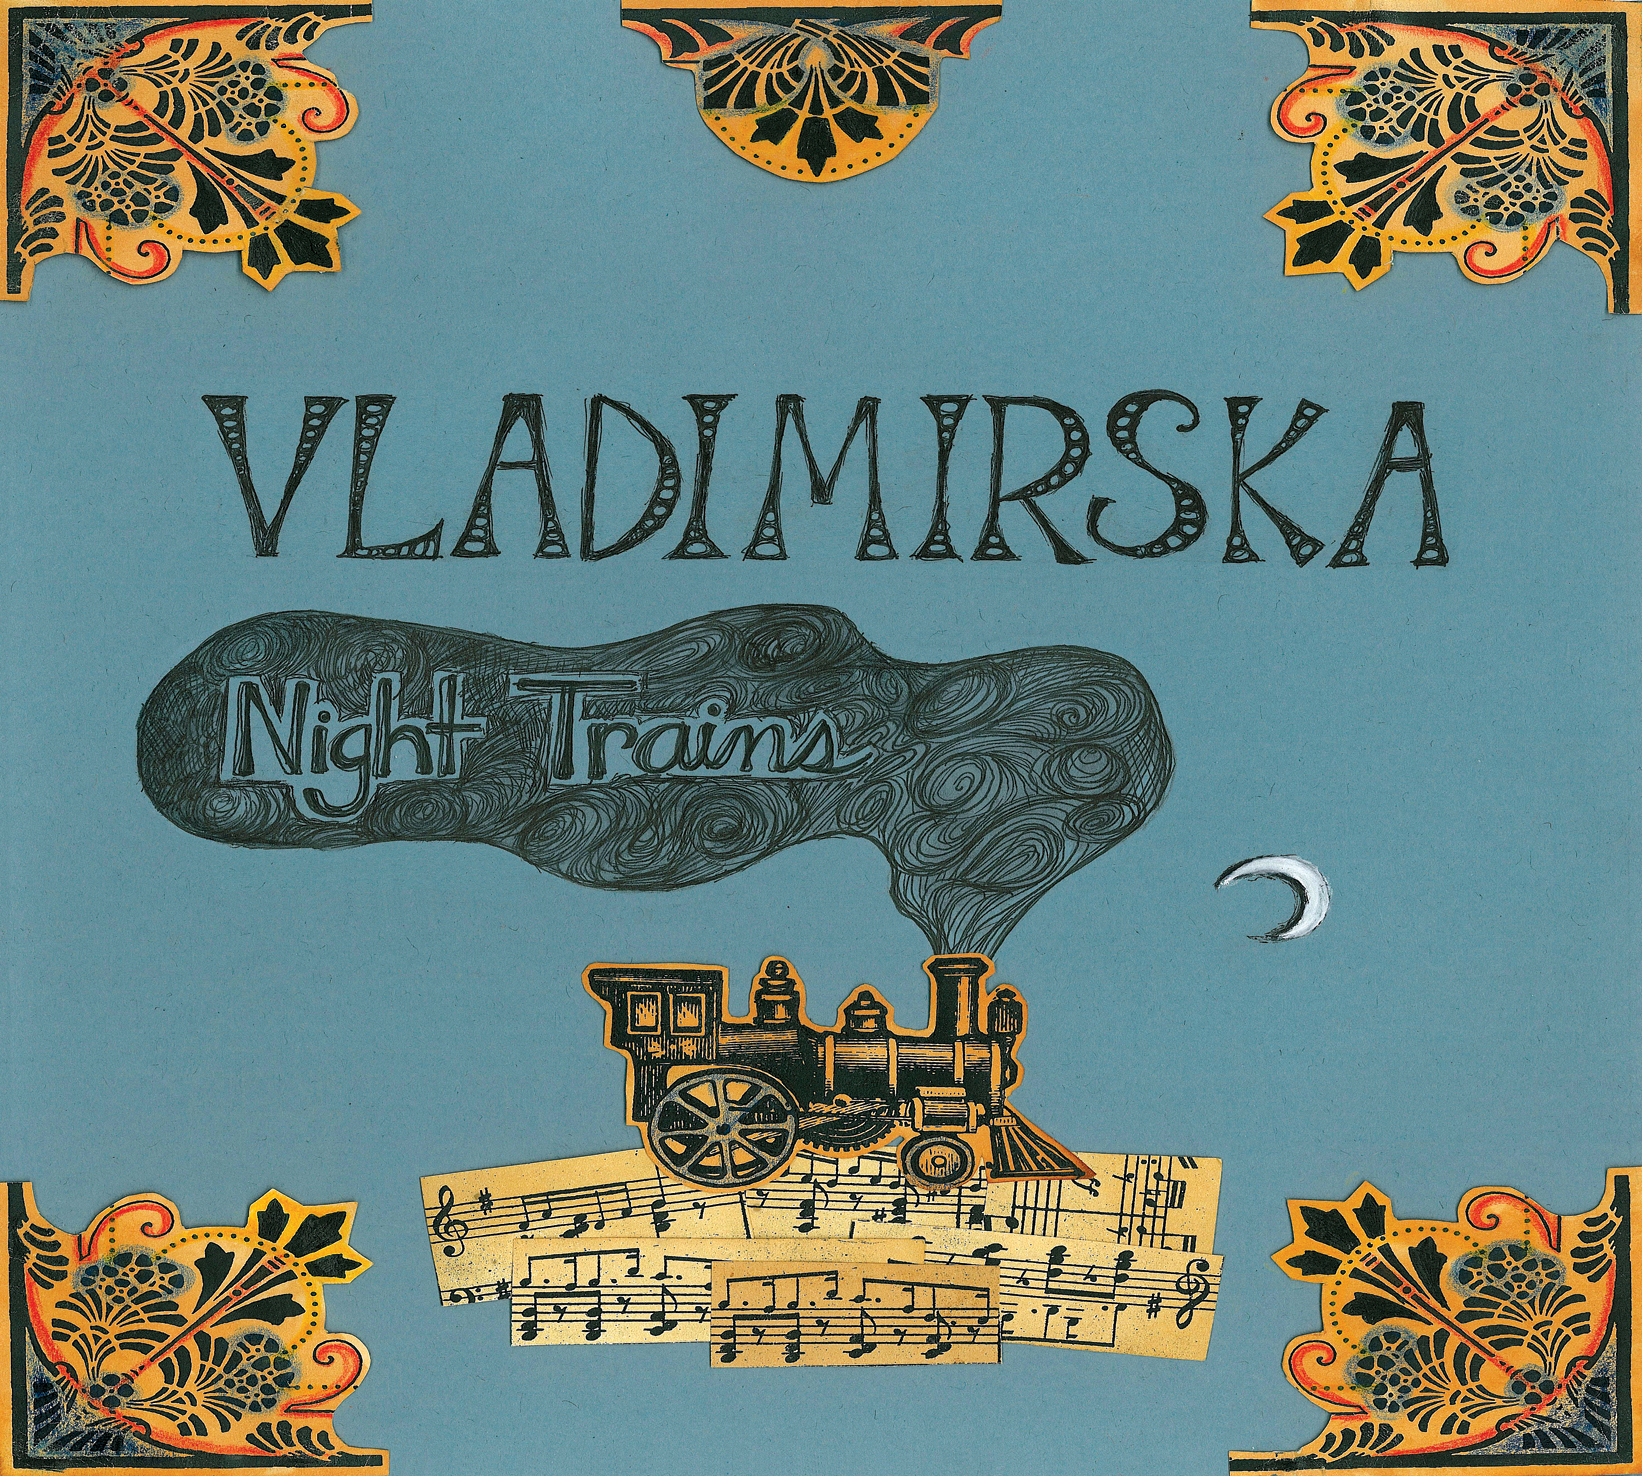 Vladimirska, Night Trains, okładka płyty (zdjęcie pochodzi z materiałów prasowych)